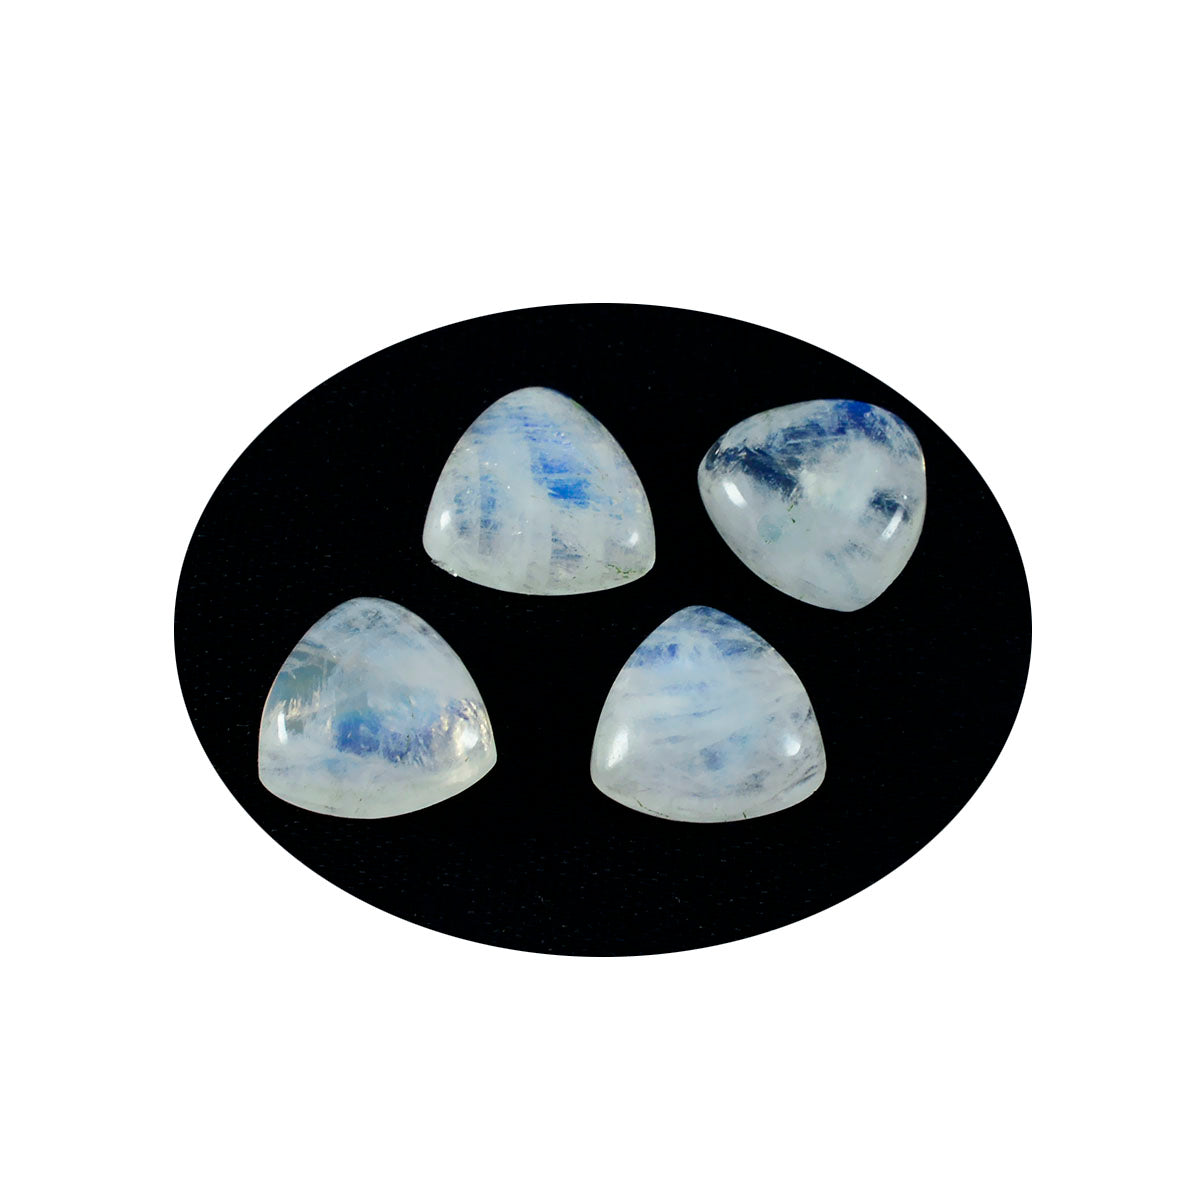 Riyogems – cabochon de pierre de lune arc-en-ciel blanc, 10x10mm, en forme de trillion, pierres précieuses en vrac de qualité aaa, 1 pièce